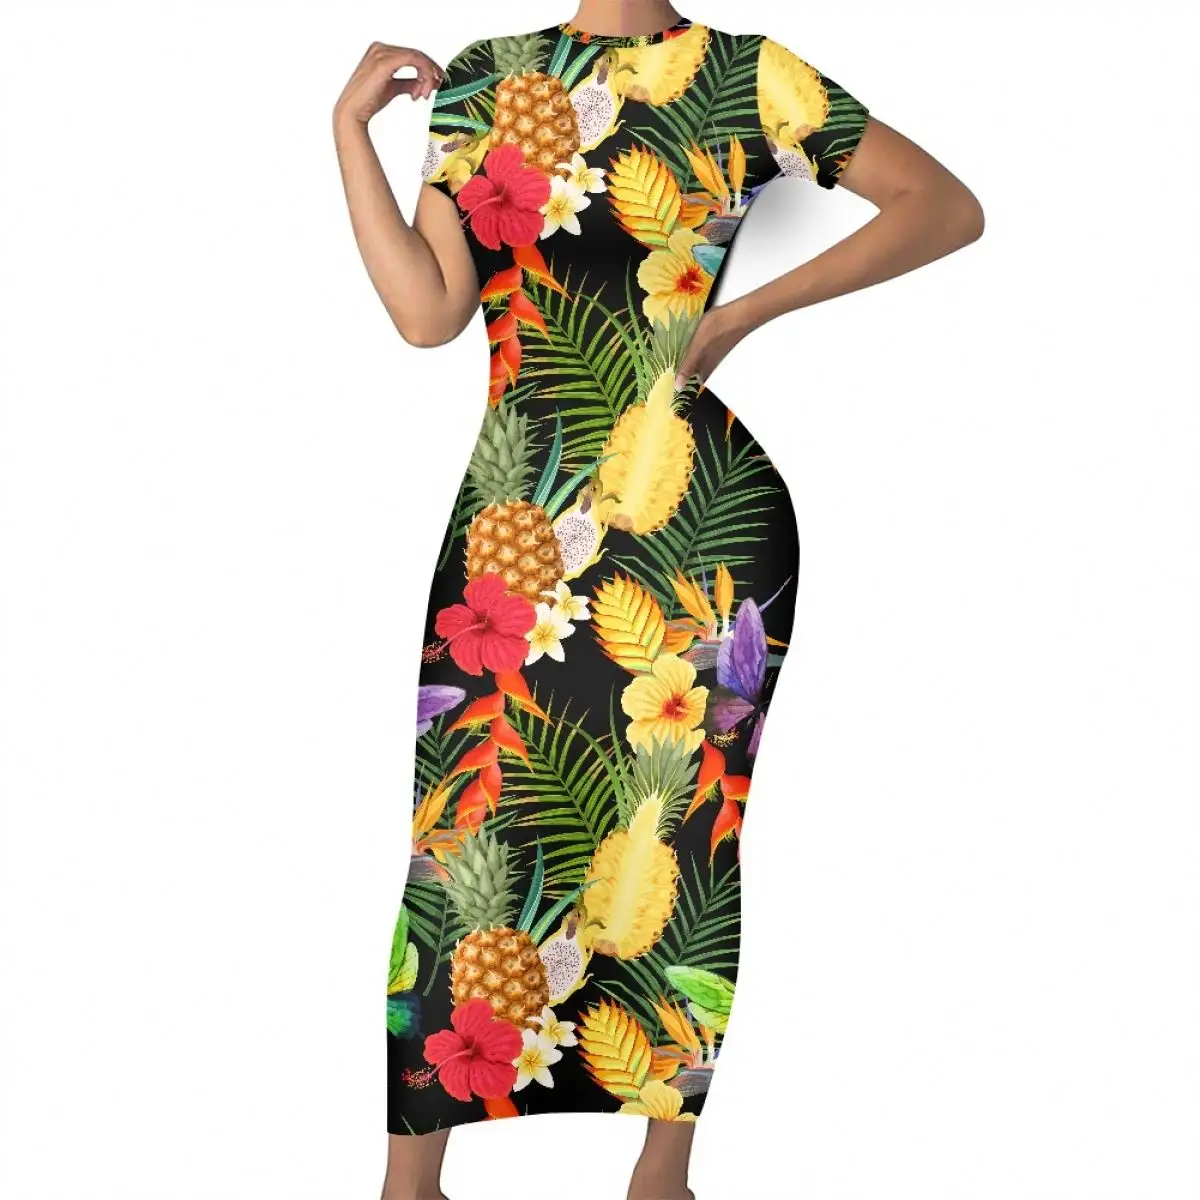 Toptan ucuz tropikal ananas çiçek tasarım kumaşlar kadın çiçek rahat elbiseler elbise o-boyun kısa kollu ofis elbise